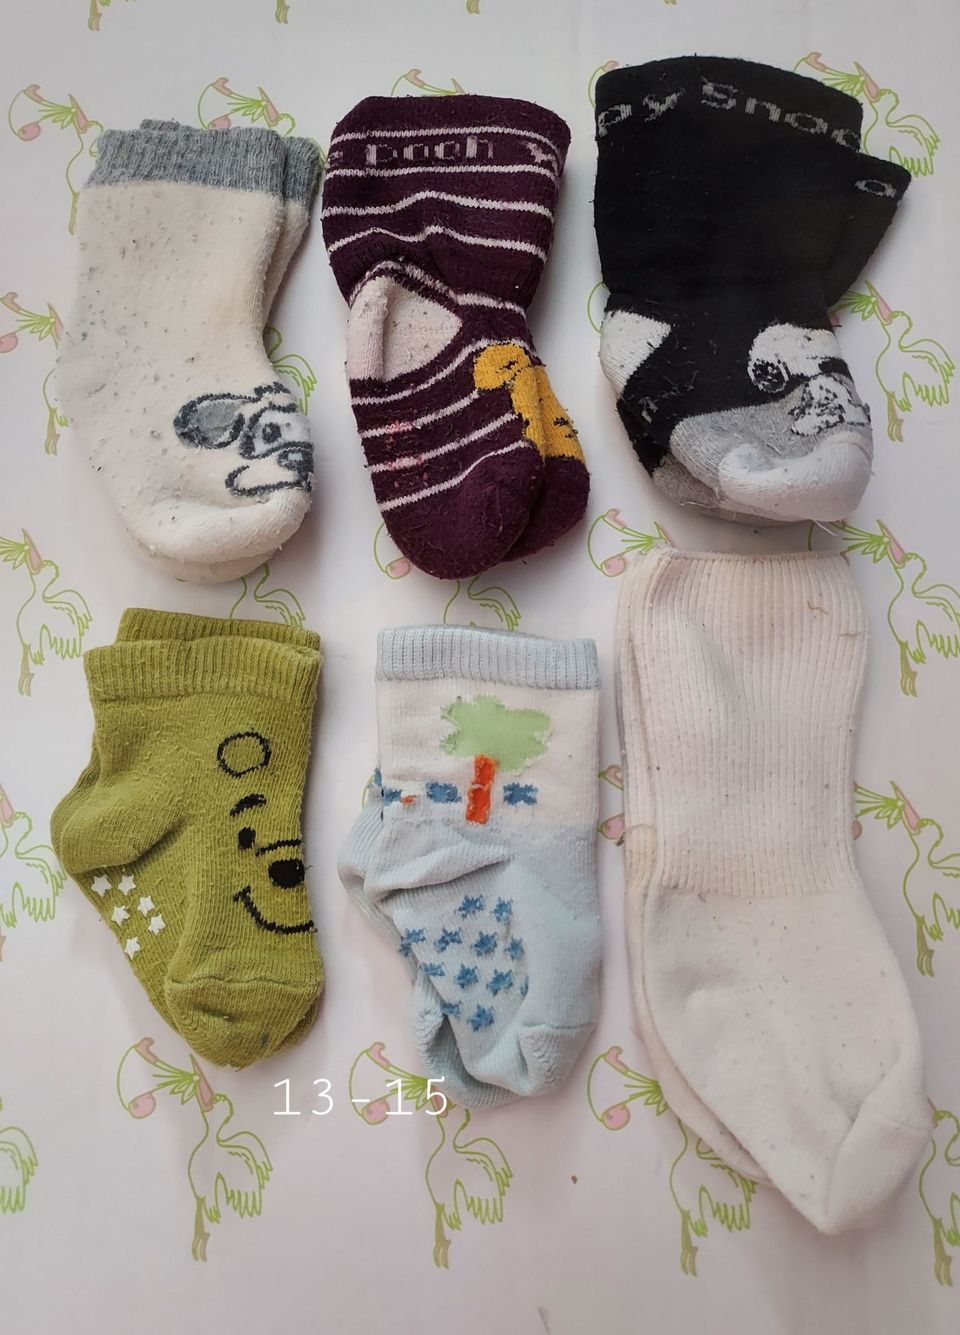 6kpl vauvan sukkia  koko 13-15